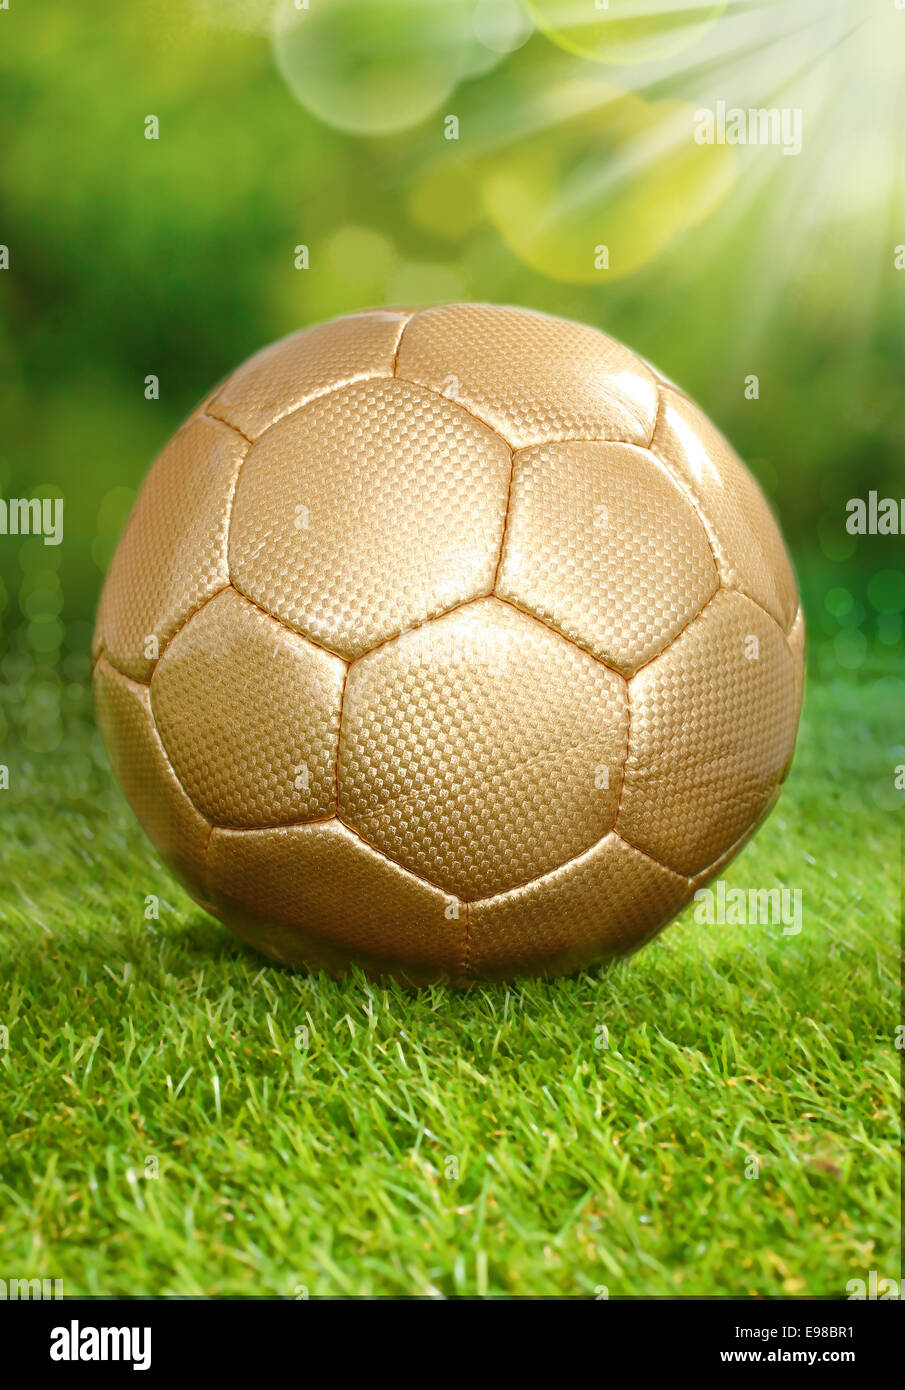 Konzeptbild von einem gesunden outdoor-Lifestyle Fußball spielen im Sommer mit einem Gold gefärbt Fußball Ball stehen auf dem üppigen grünen Rasen unter den Strahlen der Sonne Stockfoto